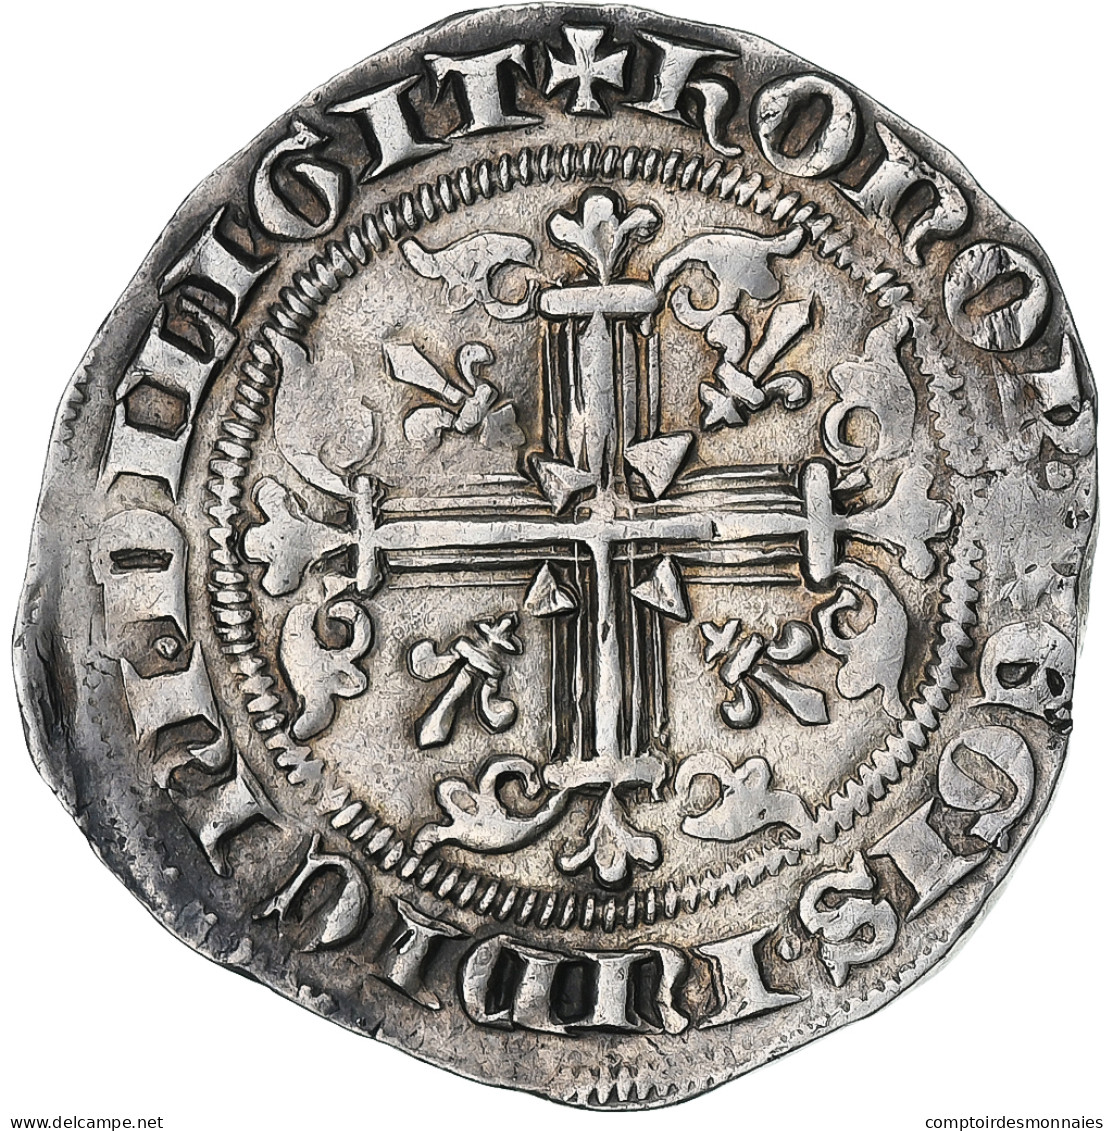 Royaume De Naples, Robert D'Anjou, Carlin, 1309-1343, Naples, Argent - Napels & Sicilië